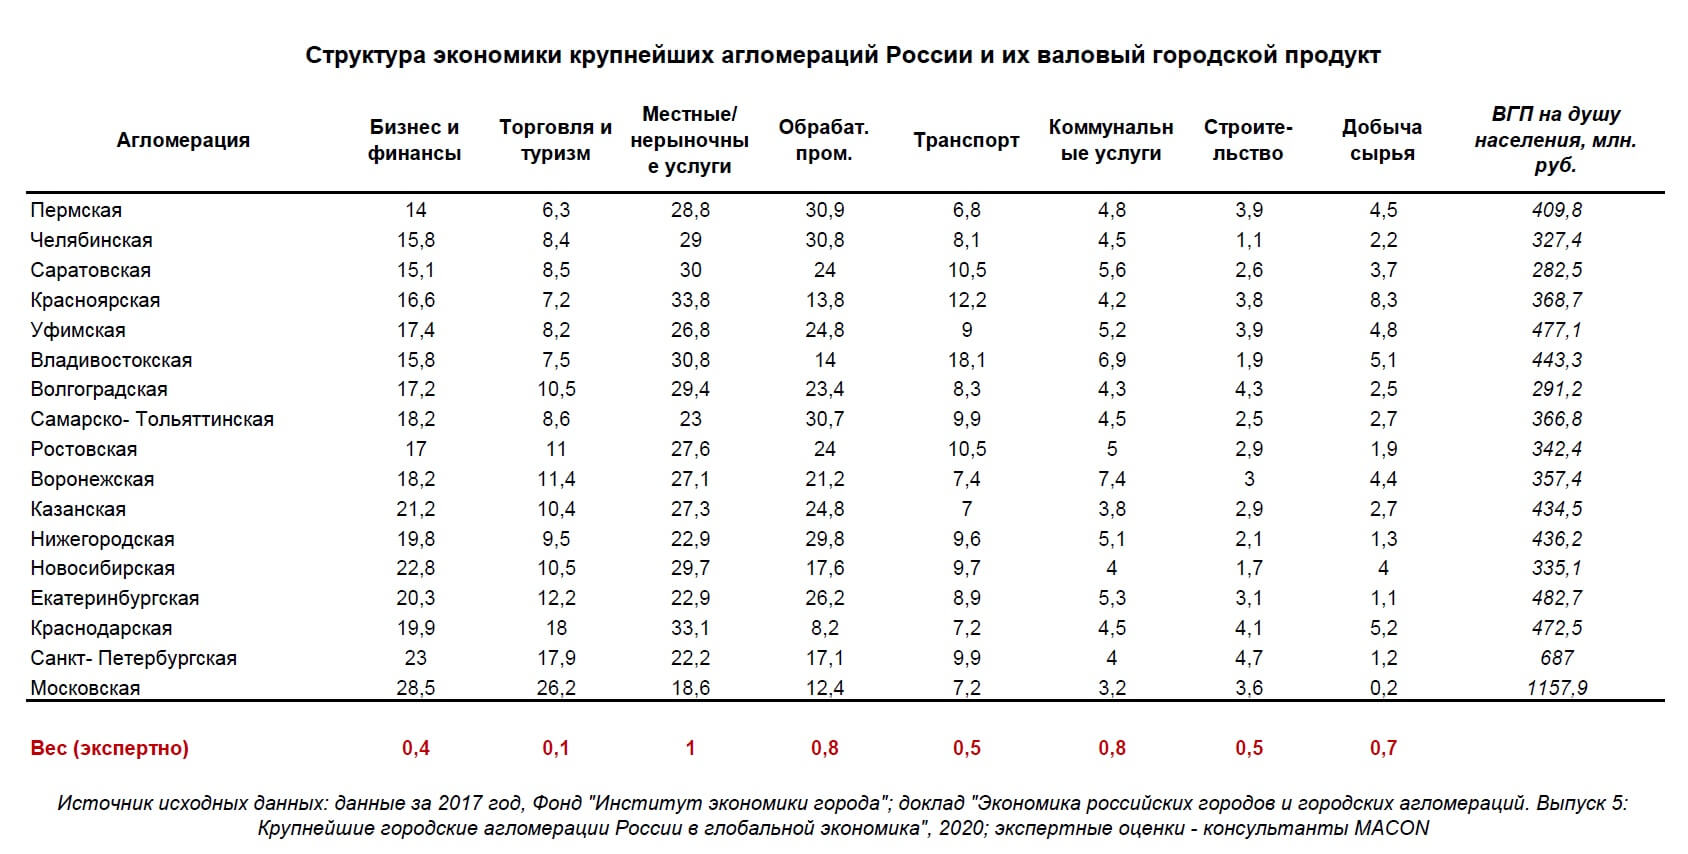 La struttura dell'economia e del PIL degli agglomerati russi